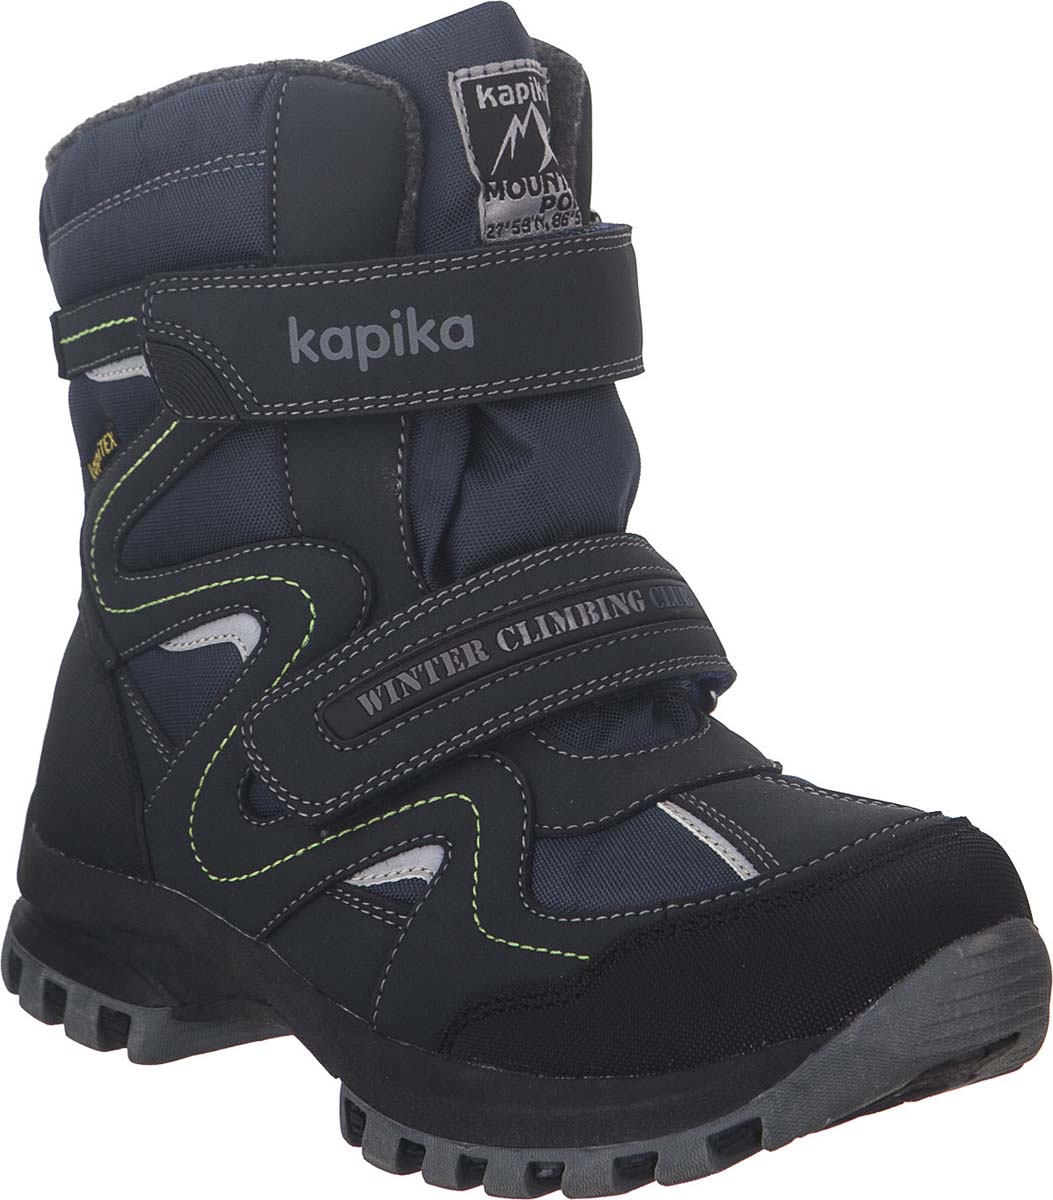 Ботинки 36 размер купить. Kapika KAPITEX ботинки. Зимние ботинки Капика для мальчика мембрана. Капика чёрный мембрана 38 зимние. Капика зимние ботинки для мальчика черный.